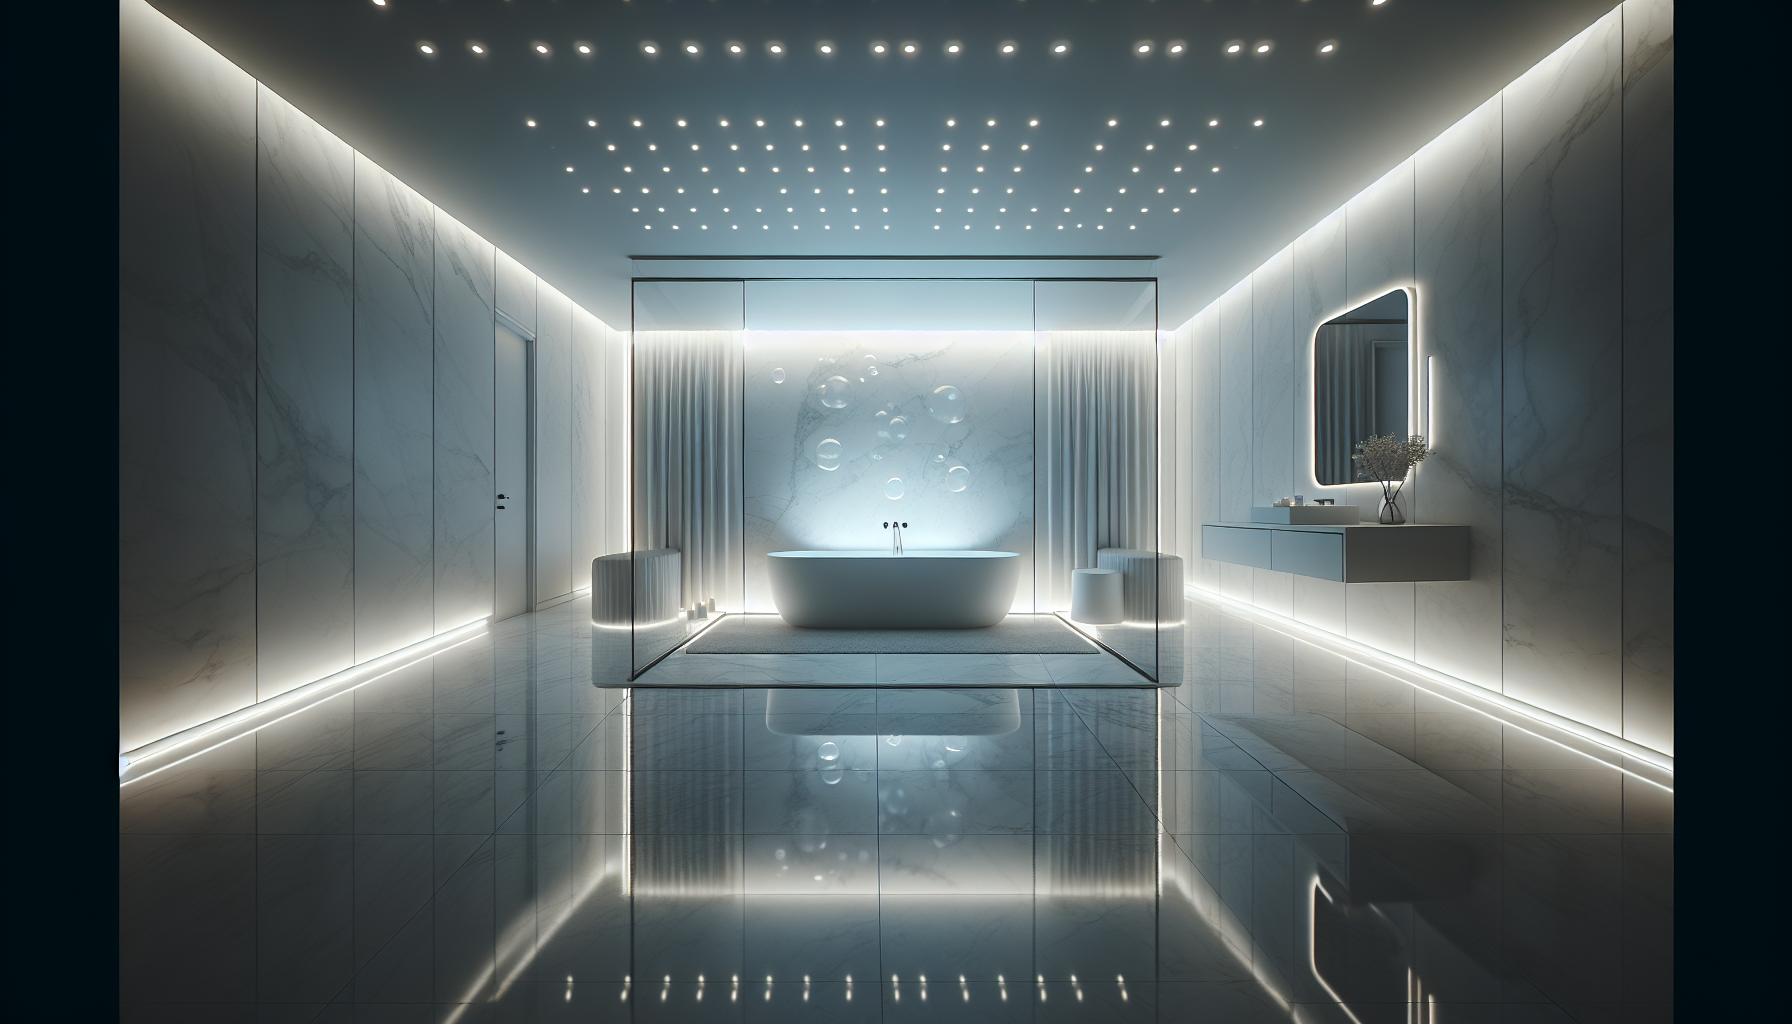 Stimmungsvolle LED-Beleuchtung im Badezimmer